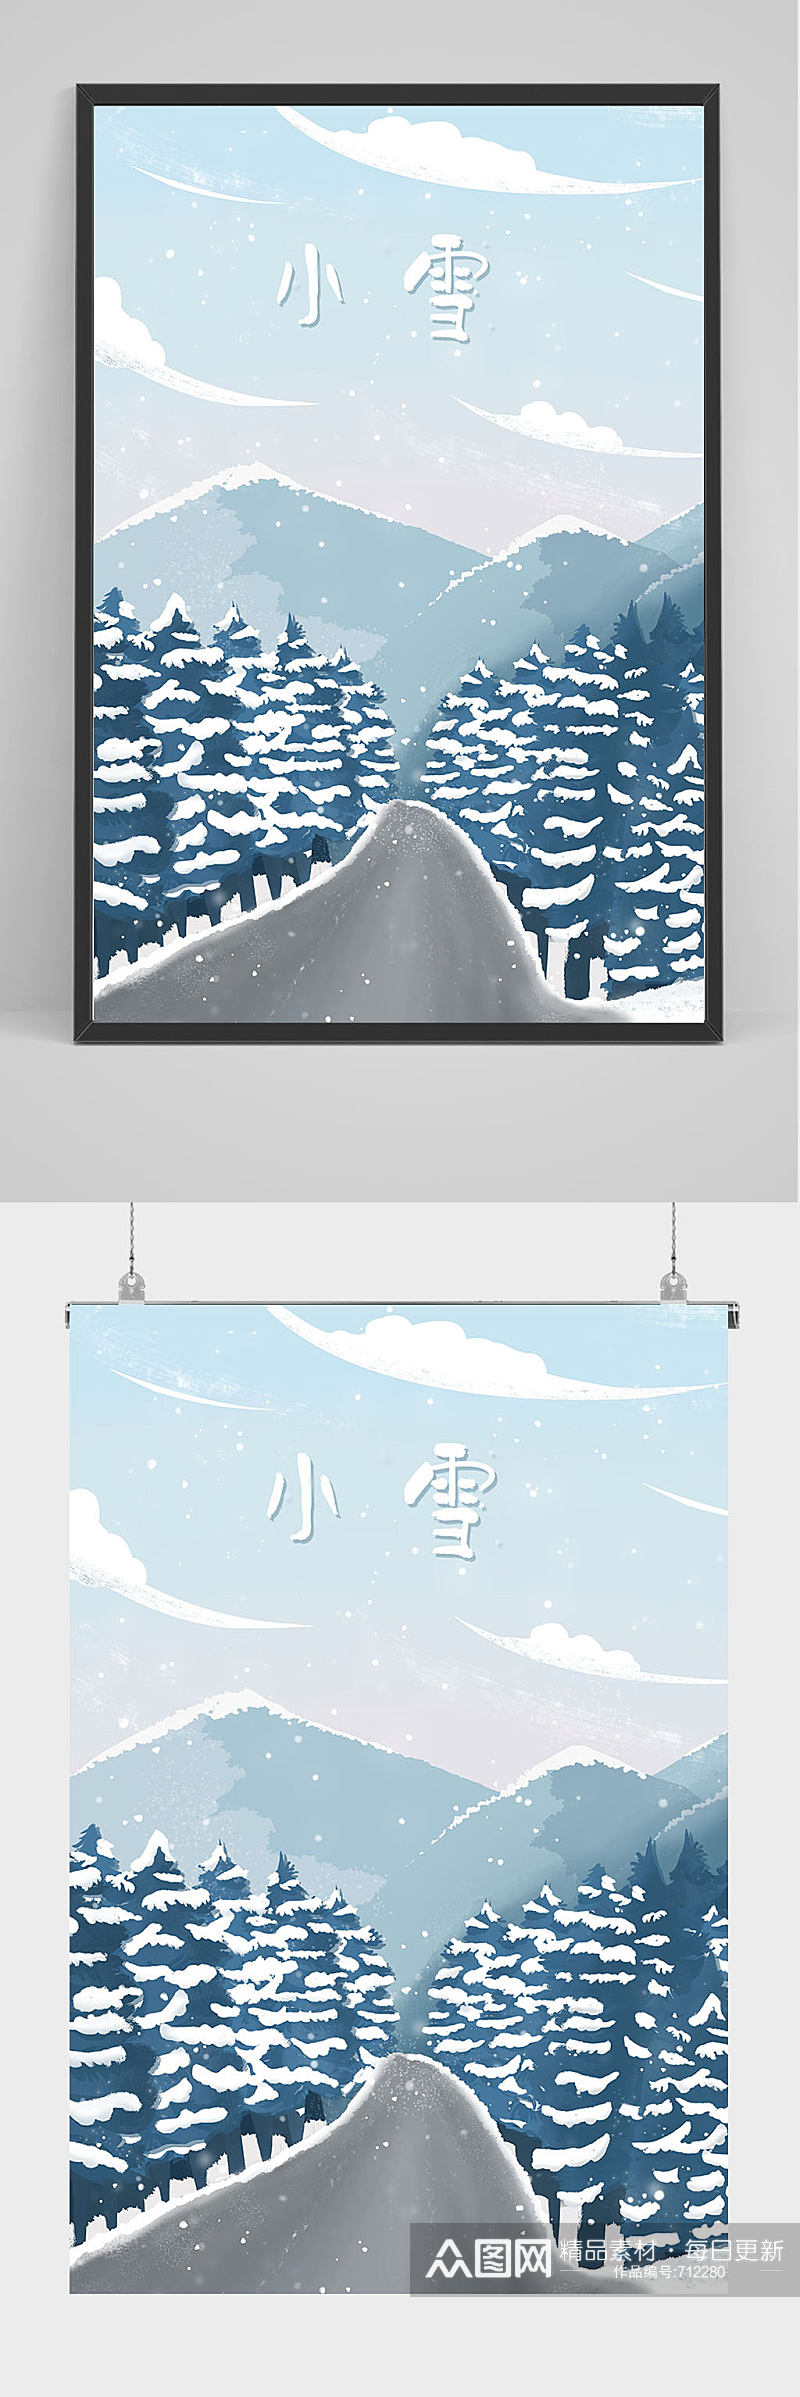 精品手绘冬天下雪公路插画设计素材